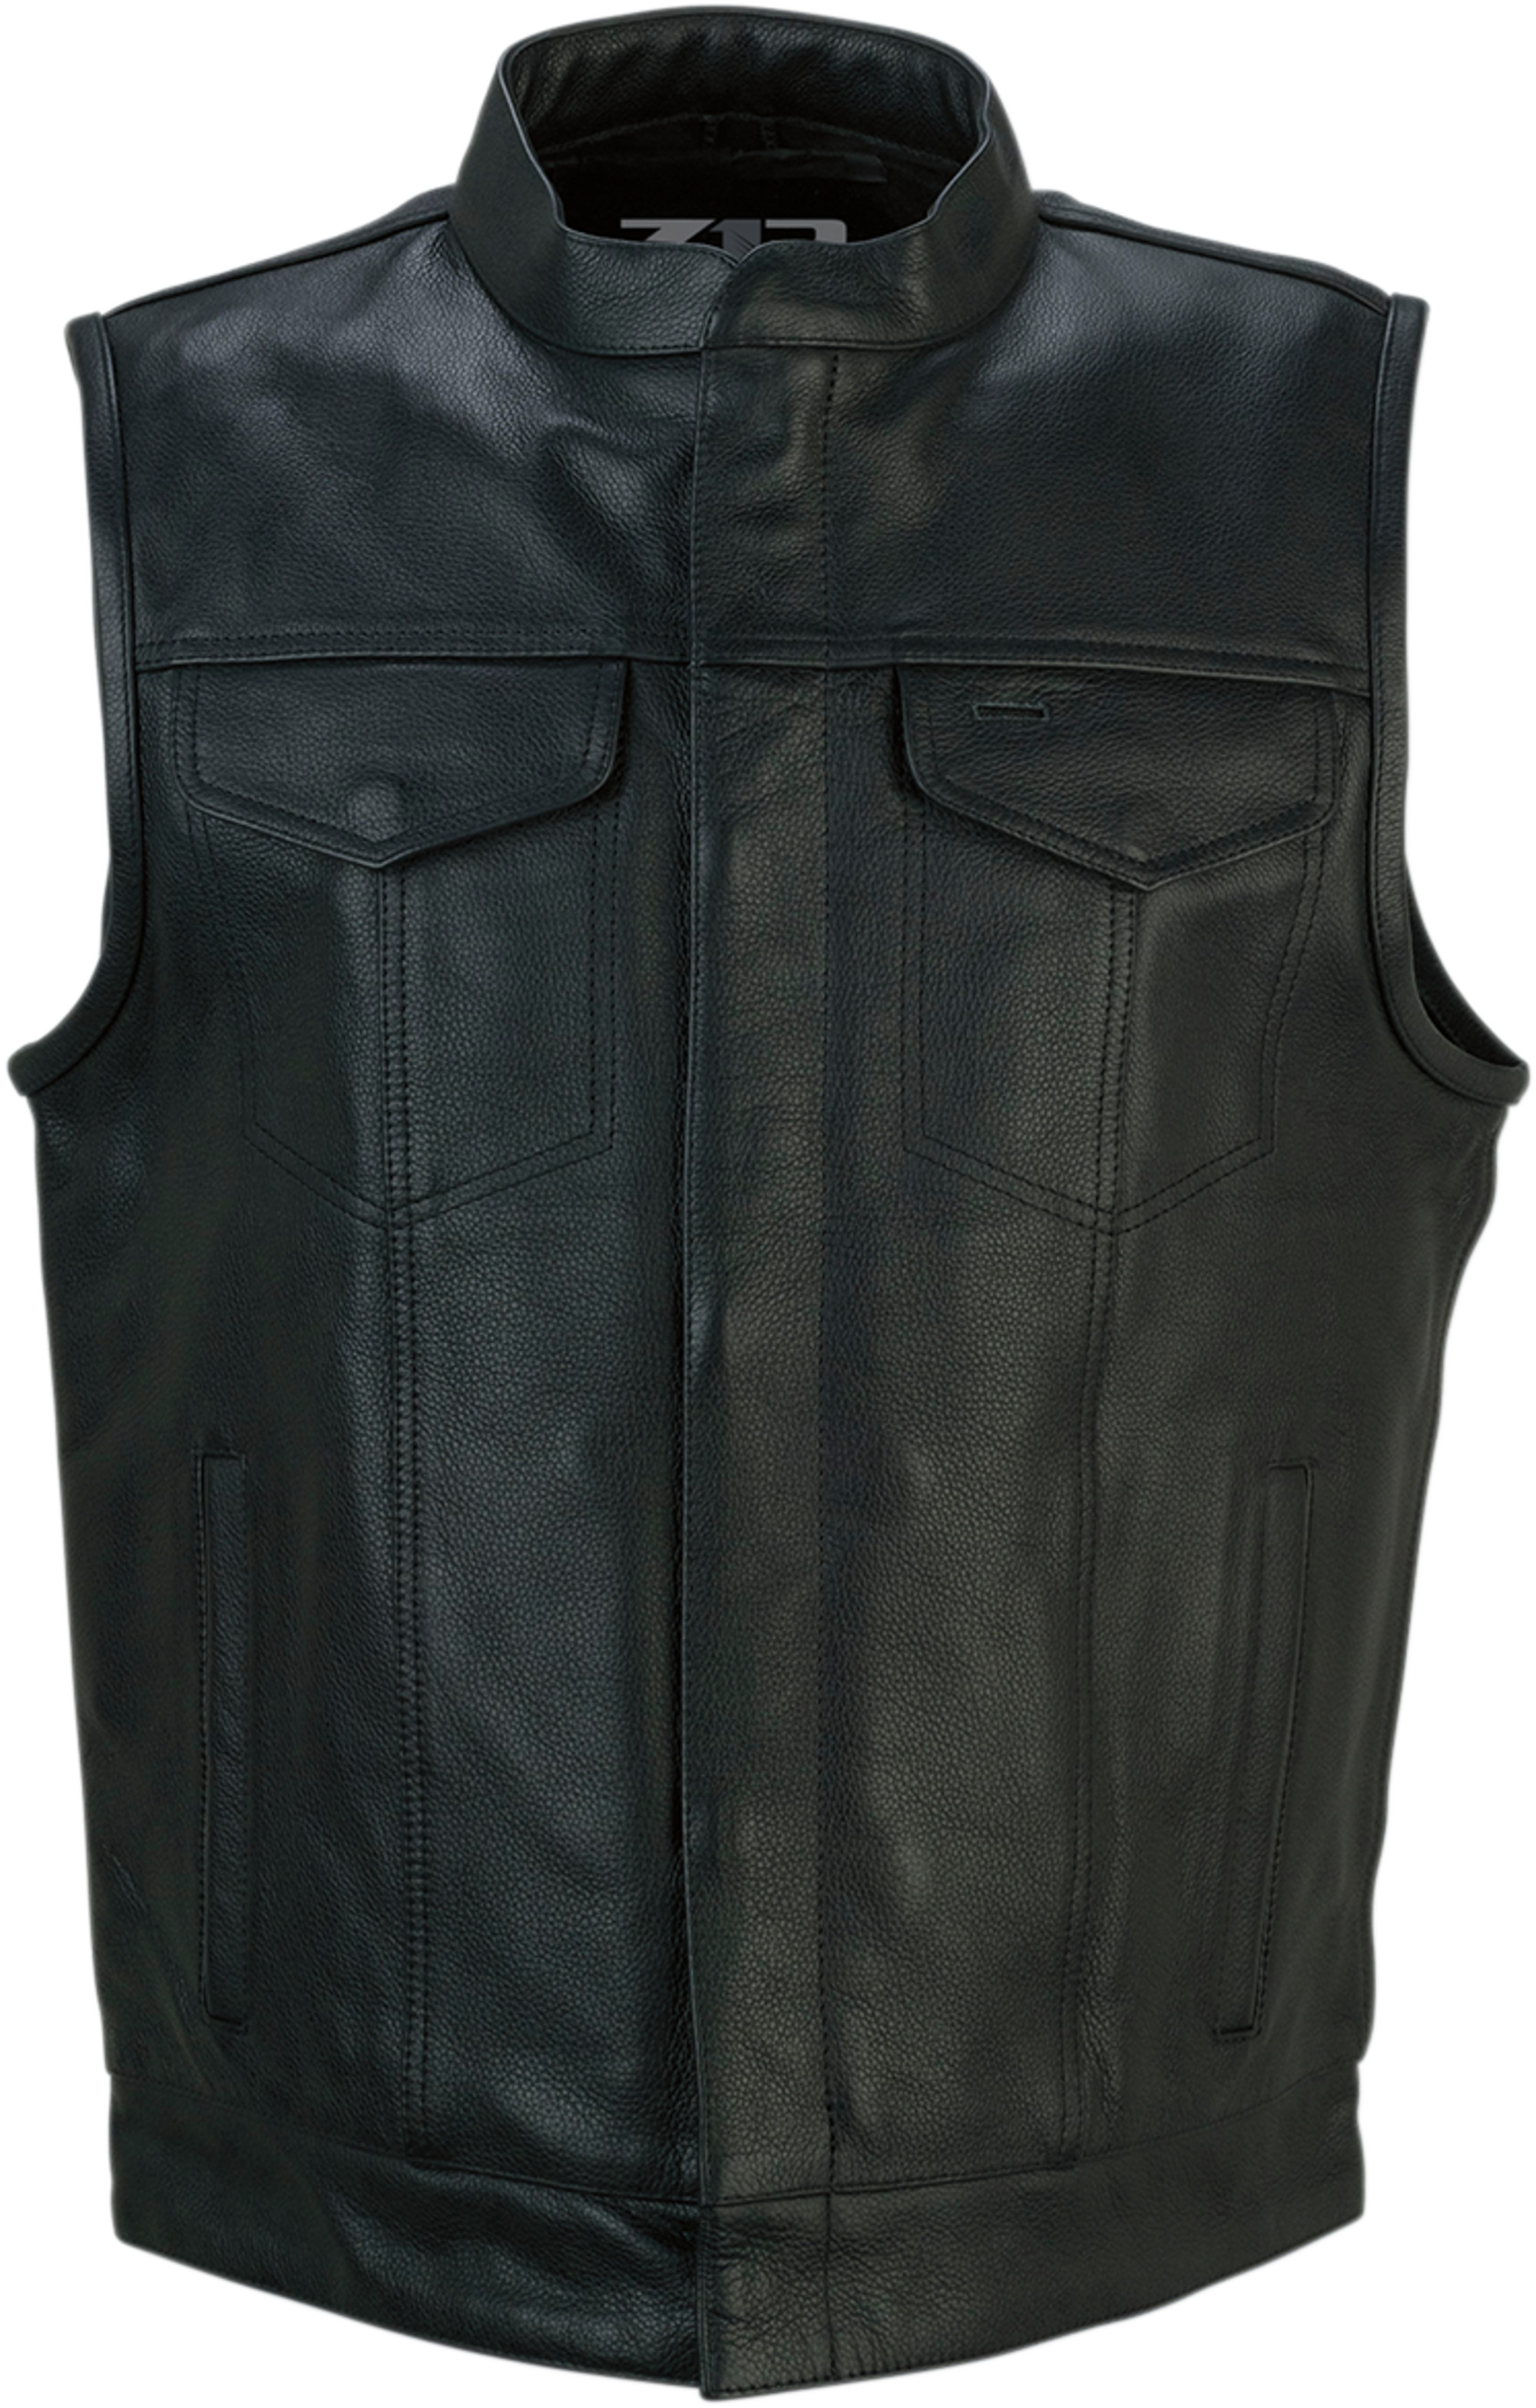 z1r vests vest for men vindicator leather